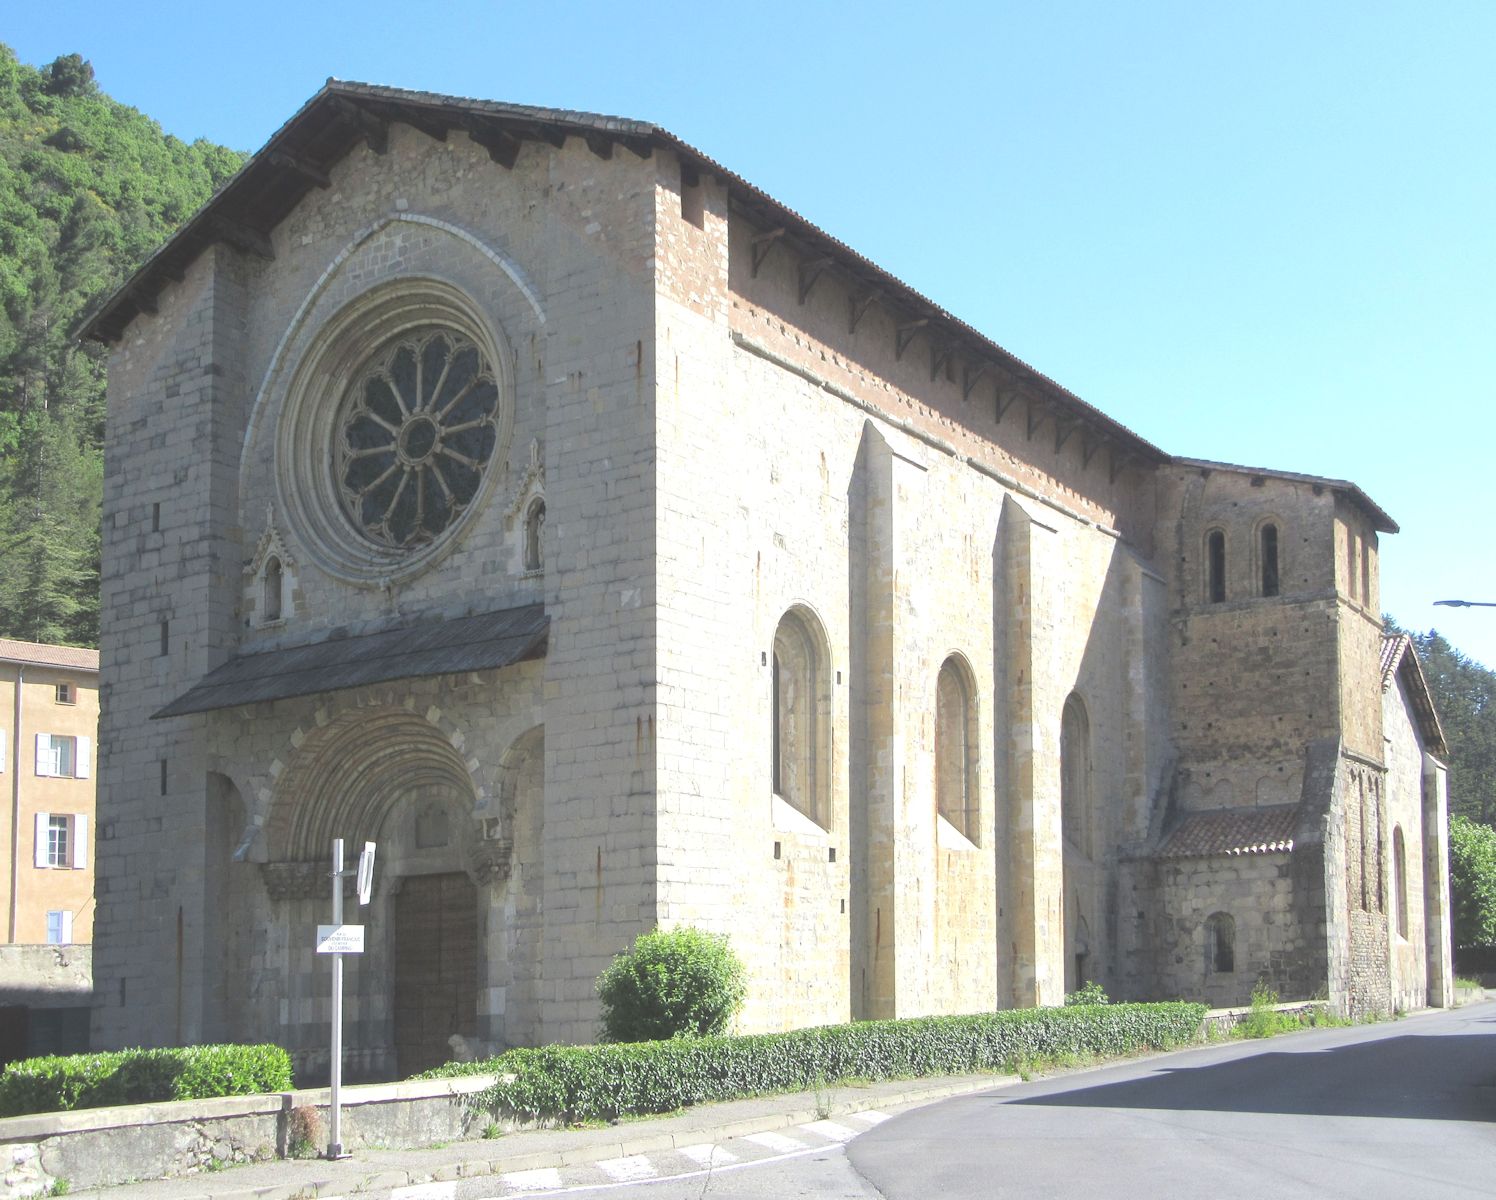 ehemalige Kathedrale Notre-Dame-du-Bourg in Digne-les-Bains, erbaut vom 12. bis 14. Jahrhundert an der Stelle von Vorgängerbauten von um 400